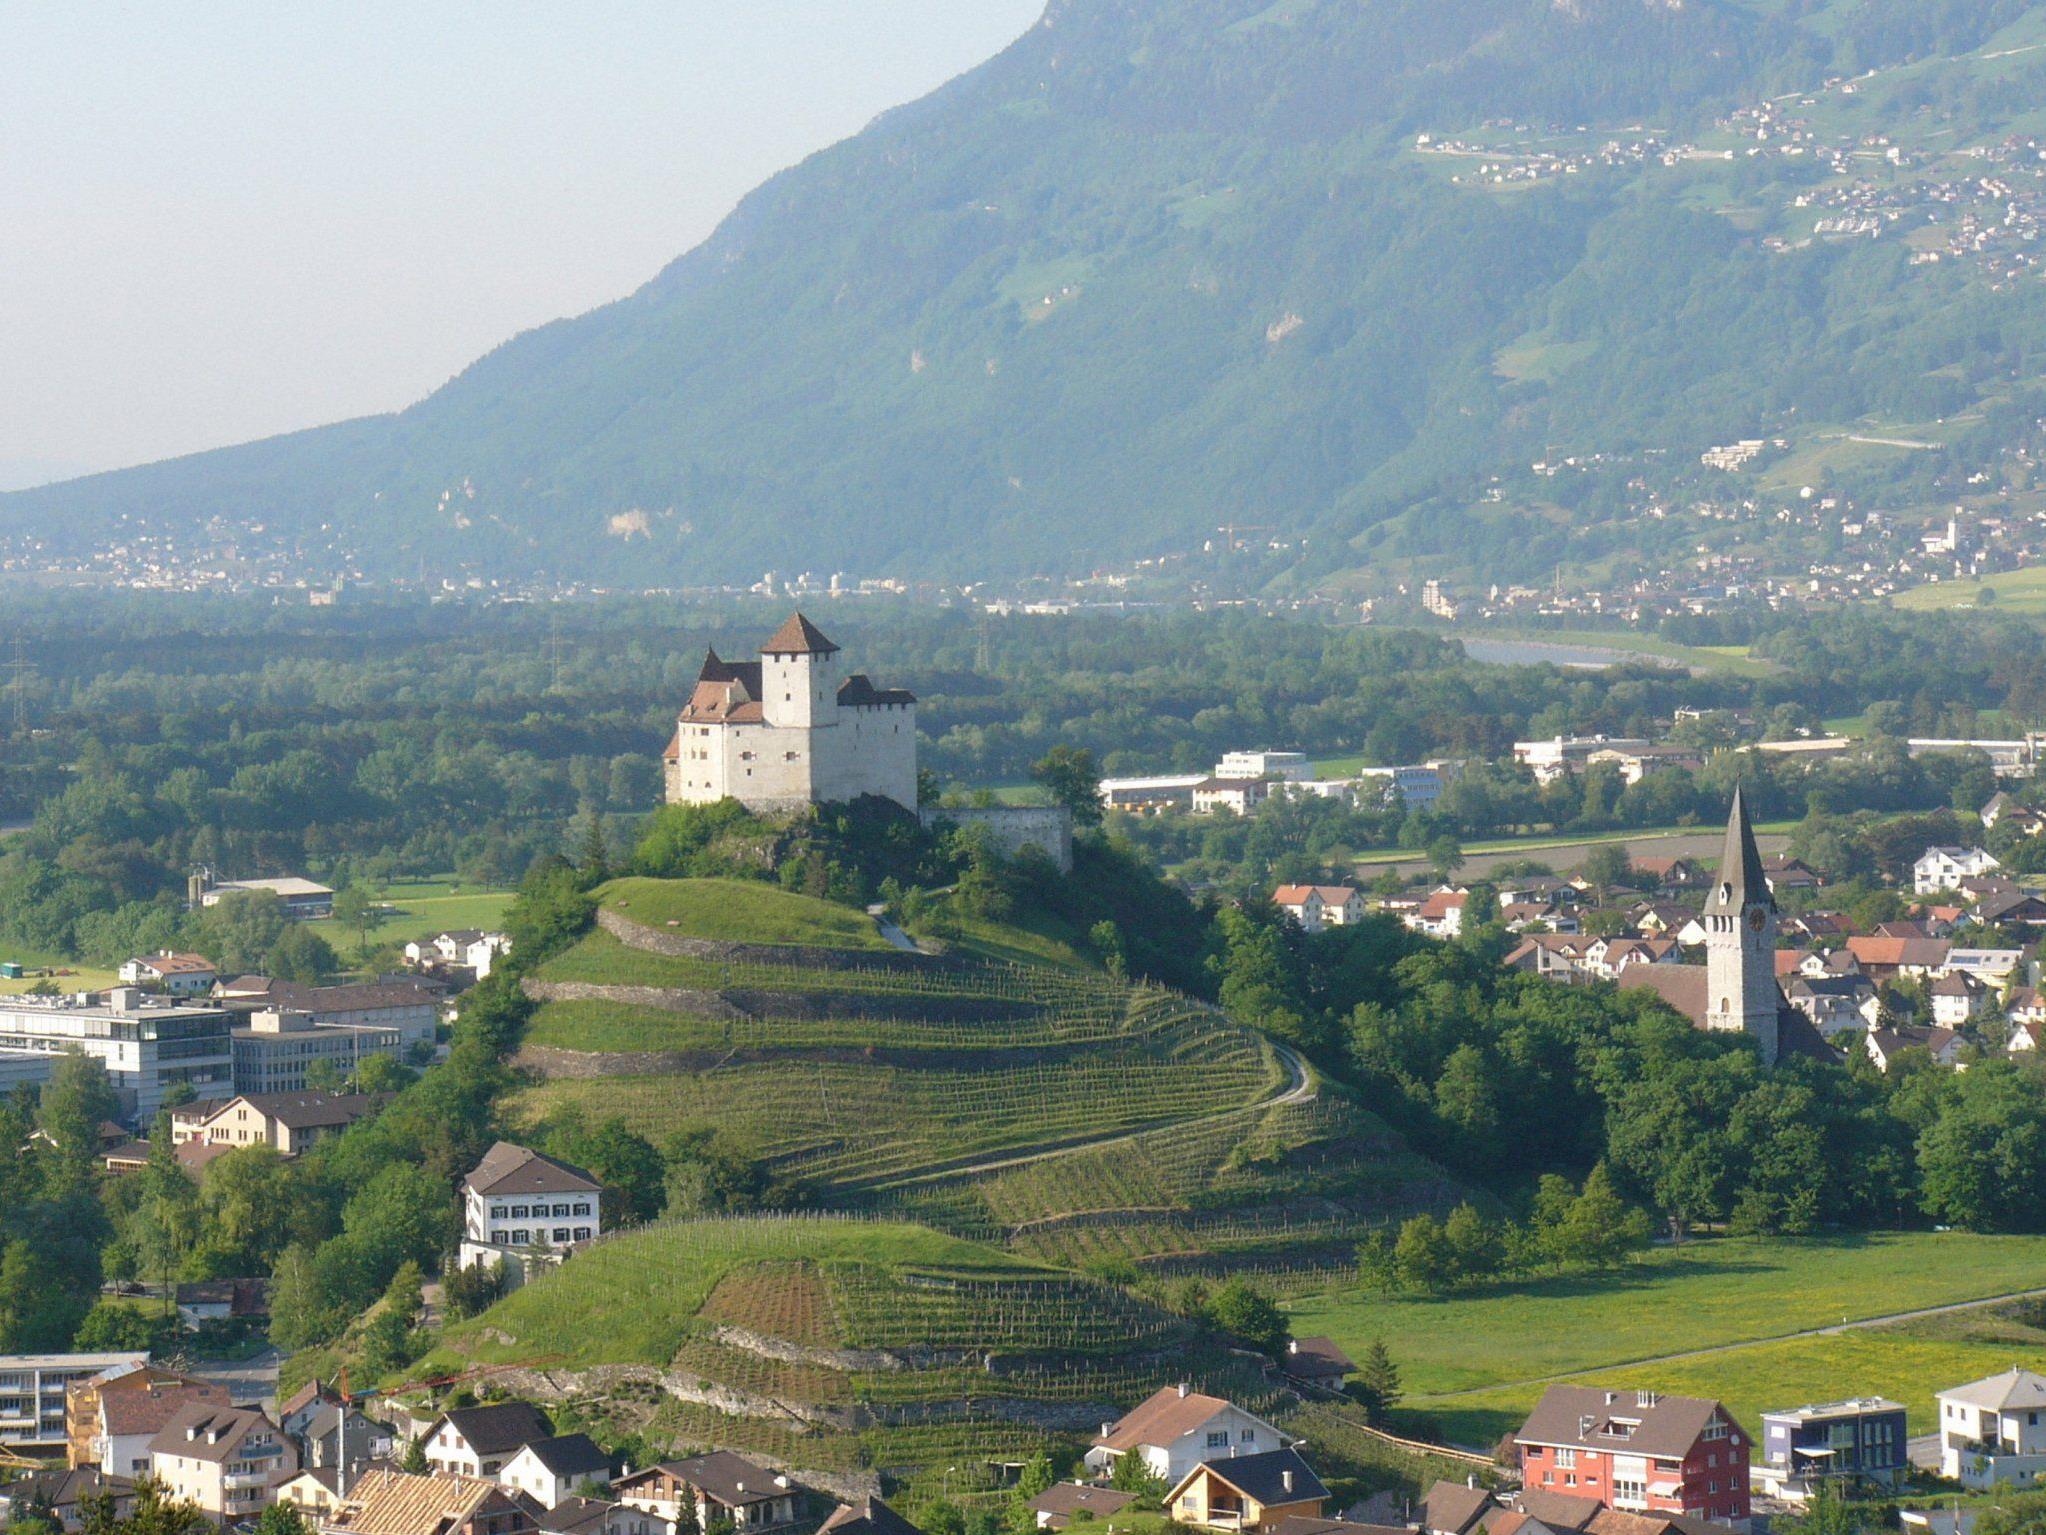 Gute Aussichten: Liechtenstein boomte in wirtschaftlicher Hinsicht. Wie geht es nun weiter?